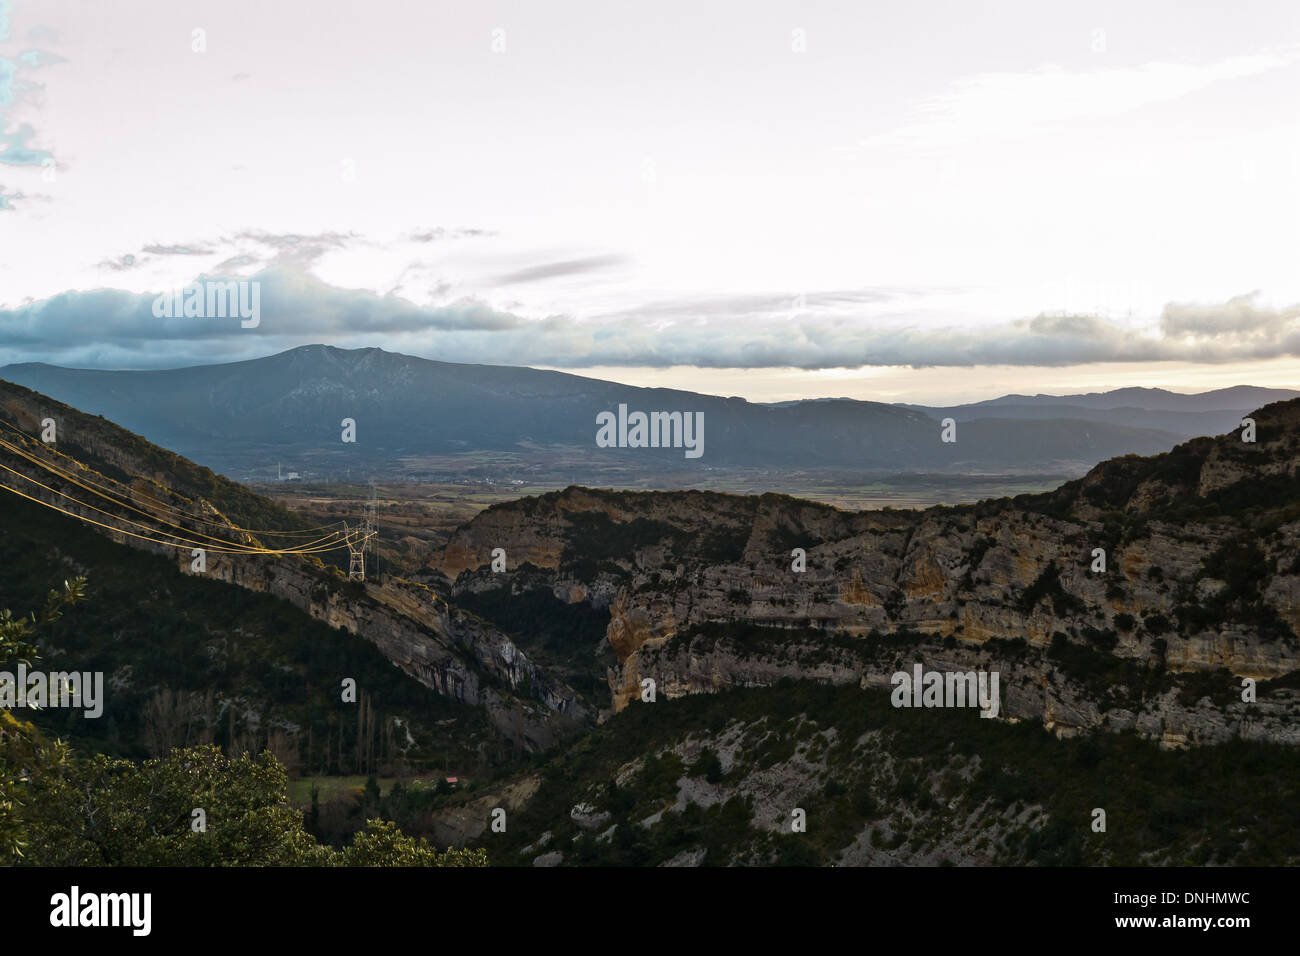 Arcena mountains. Stock Photo